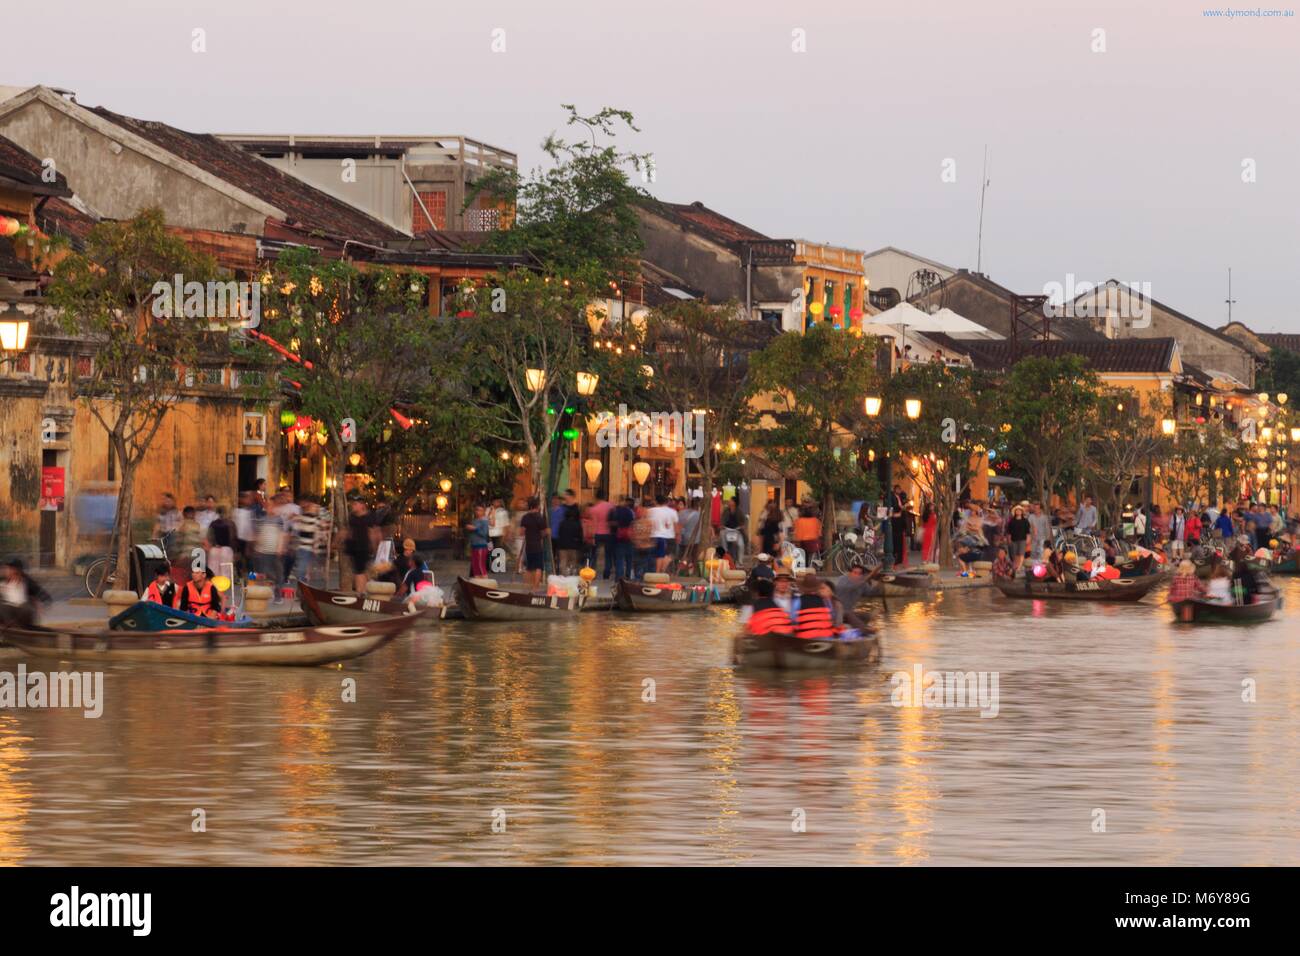 Die Dämmerung fällt auf Bach Dang Street Touristen zu Boote auf dem Thu Bon Fluss nehmen, um die Aussicht zu genießen. Stockfoto